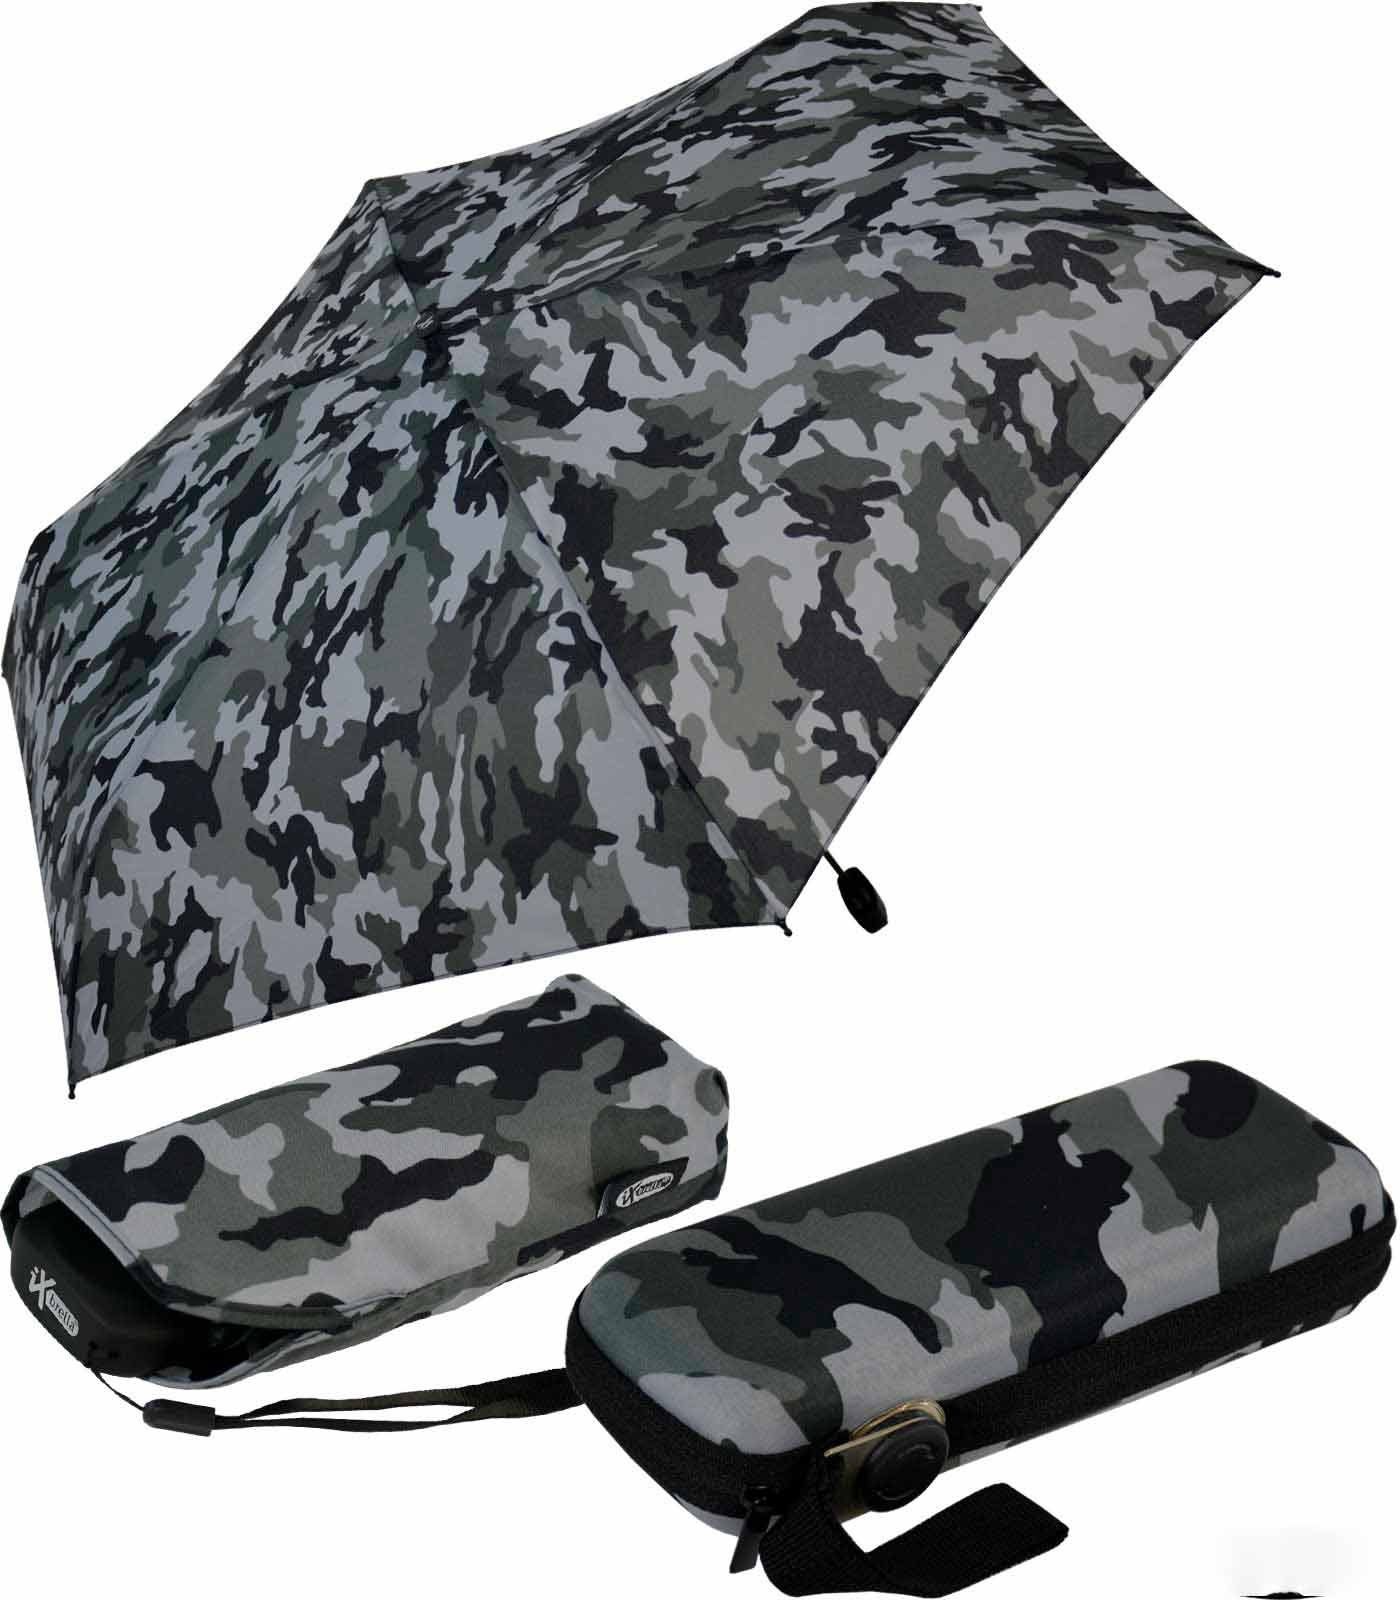 iX-brella Taschenregenschirm Super Mini Schirm mit großem Dach 94cm - Camouflage, super-mini stone